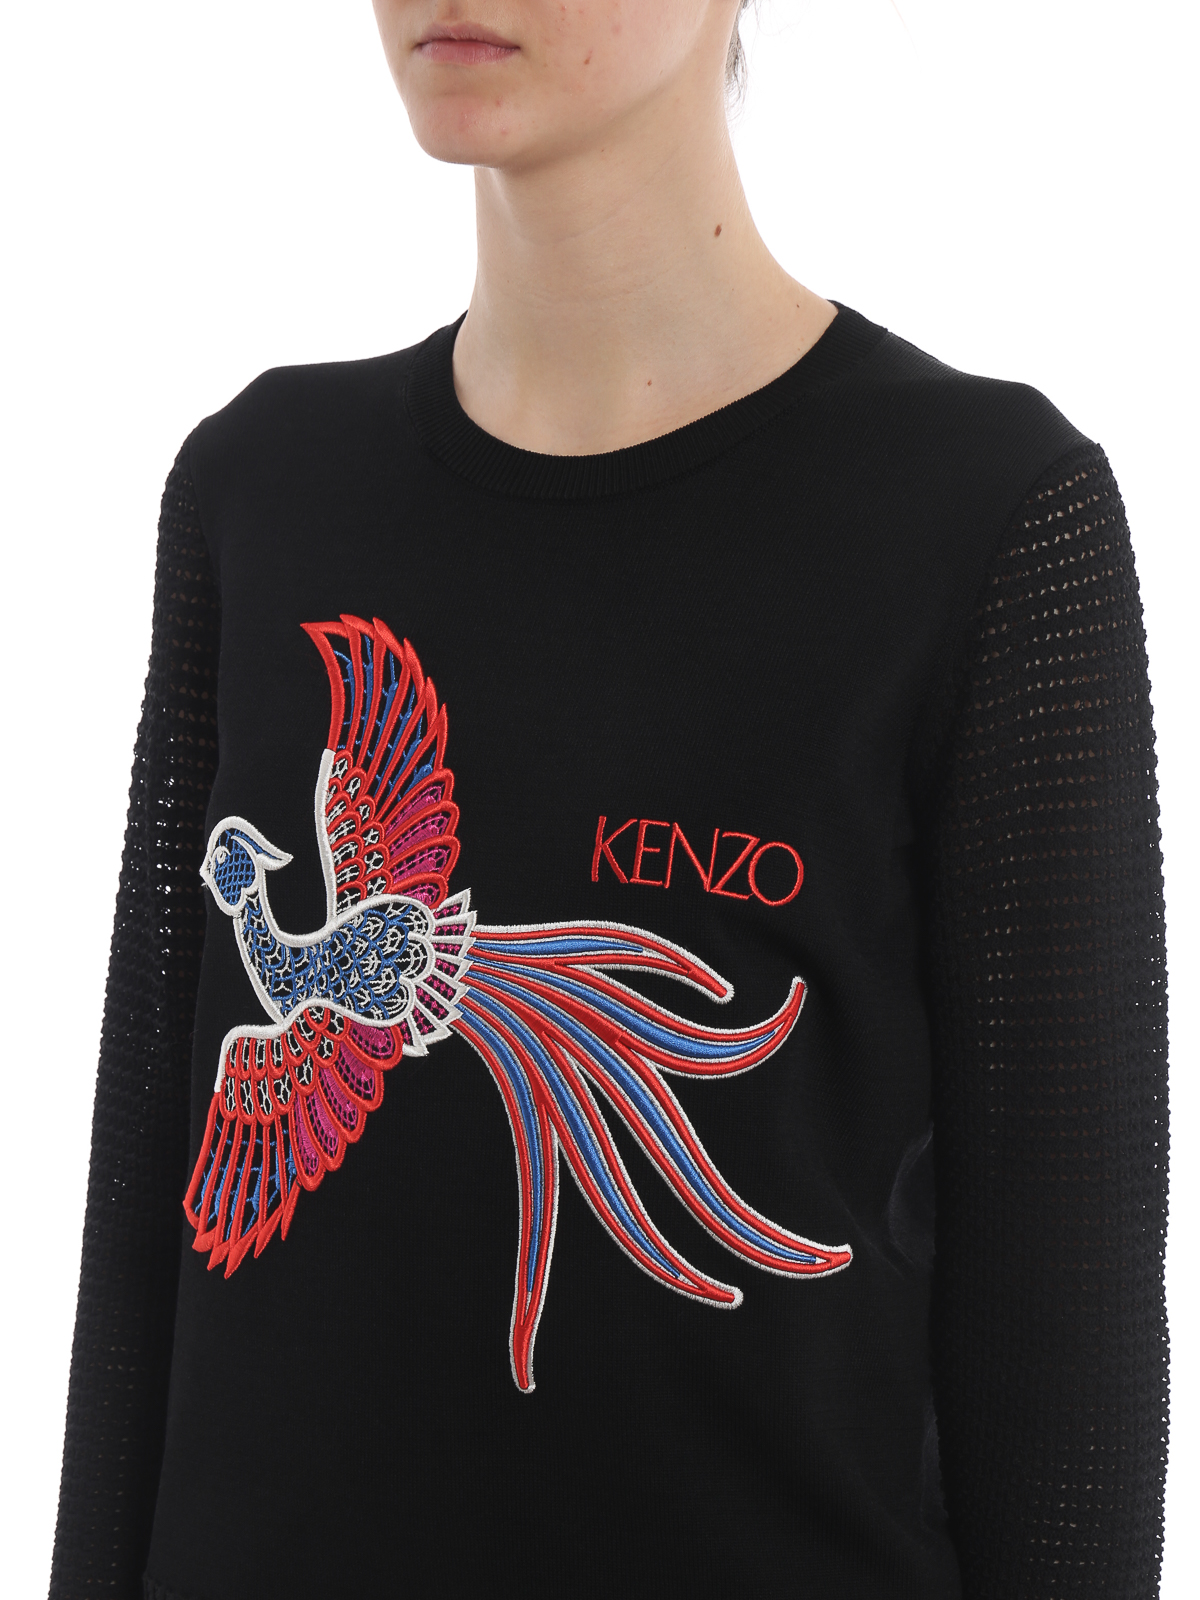 Kenzo - Phoenix openwork sleeve black 